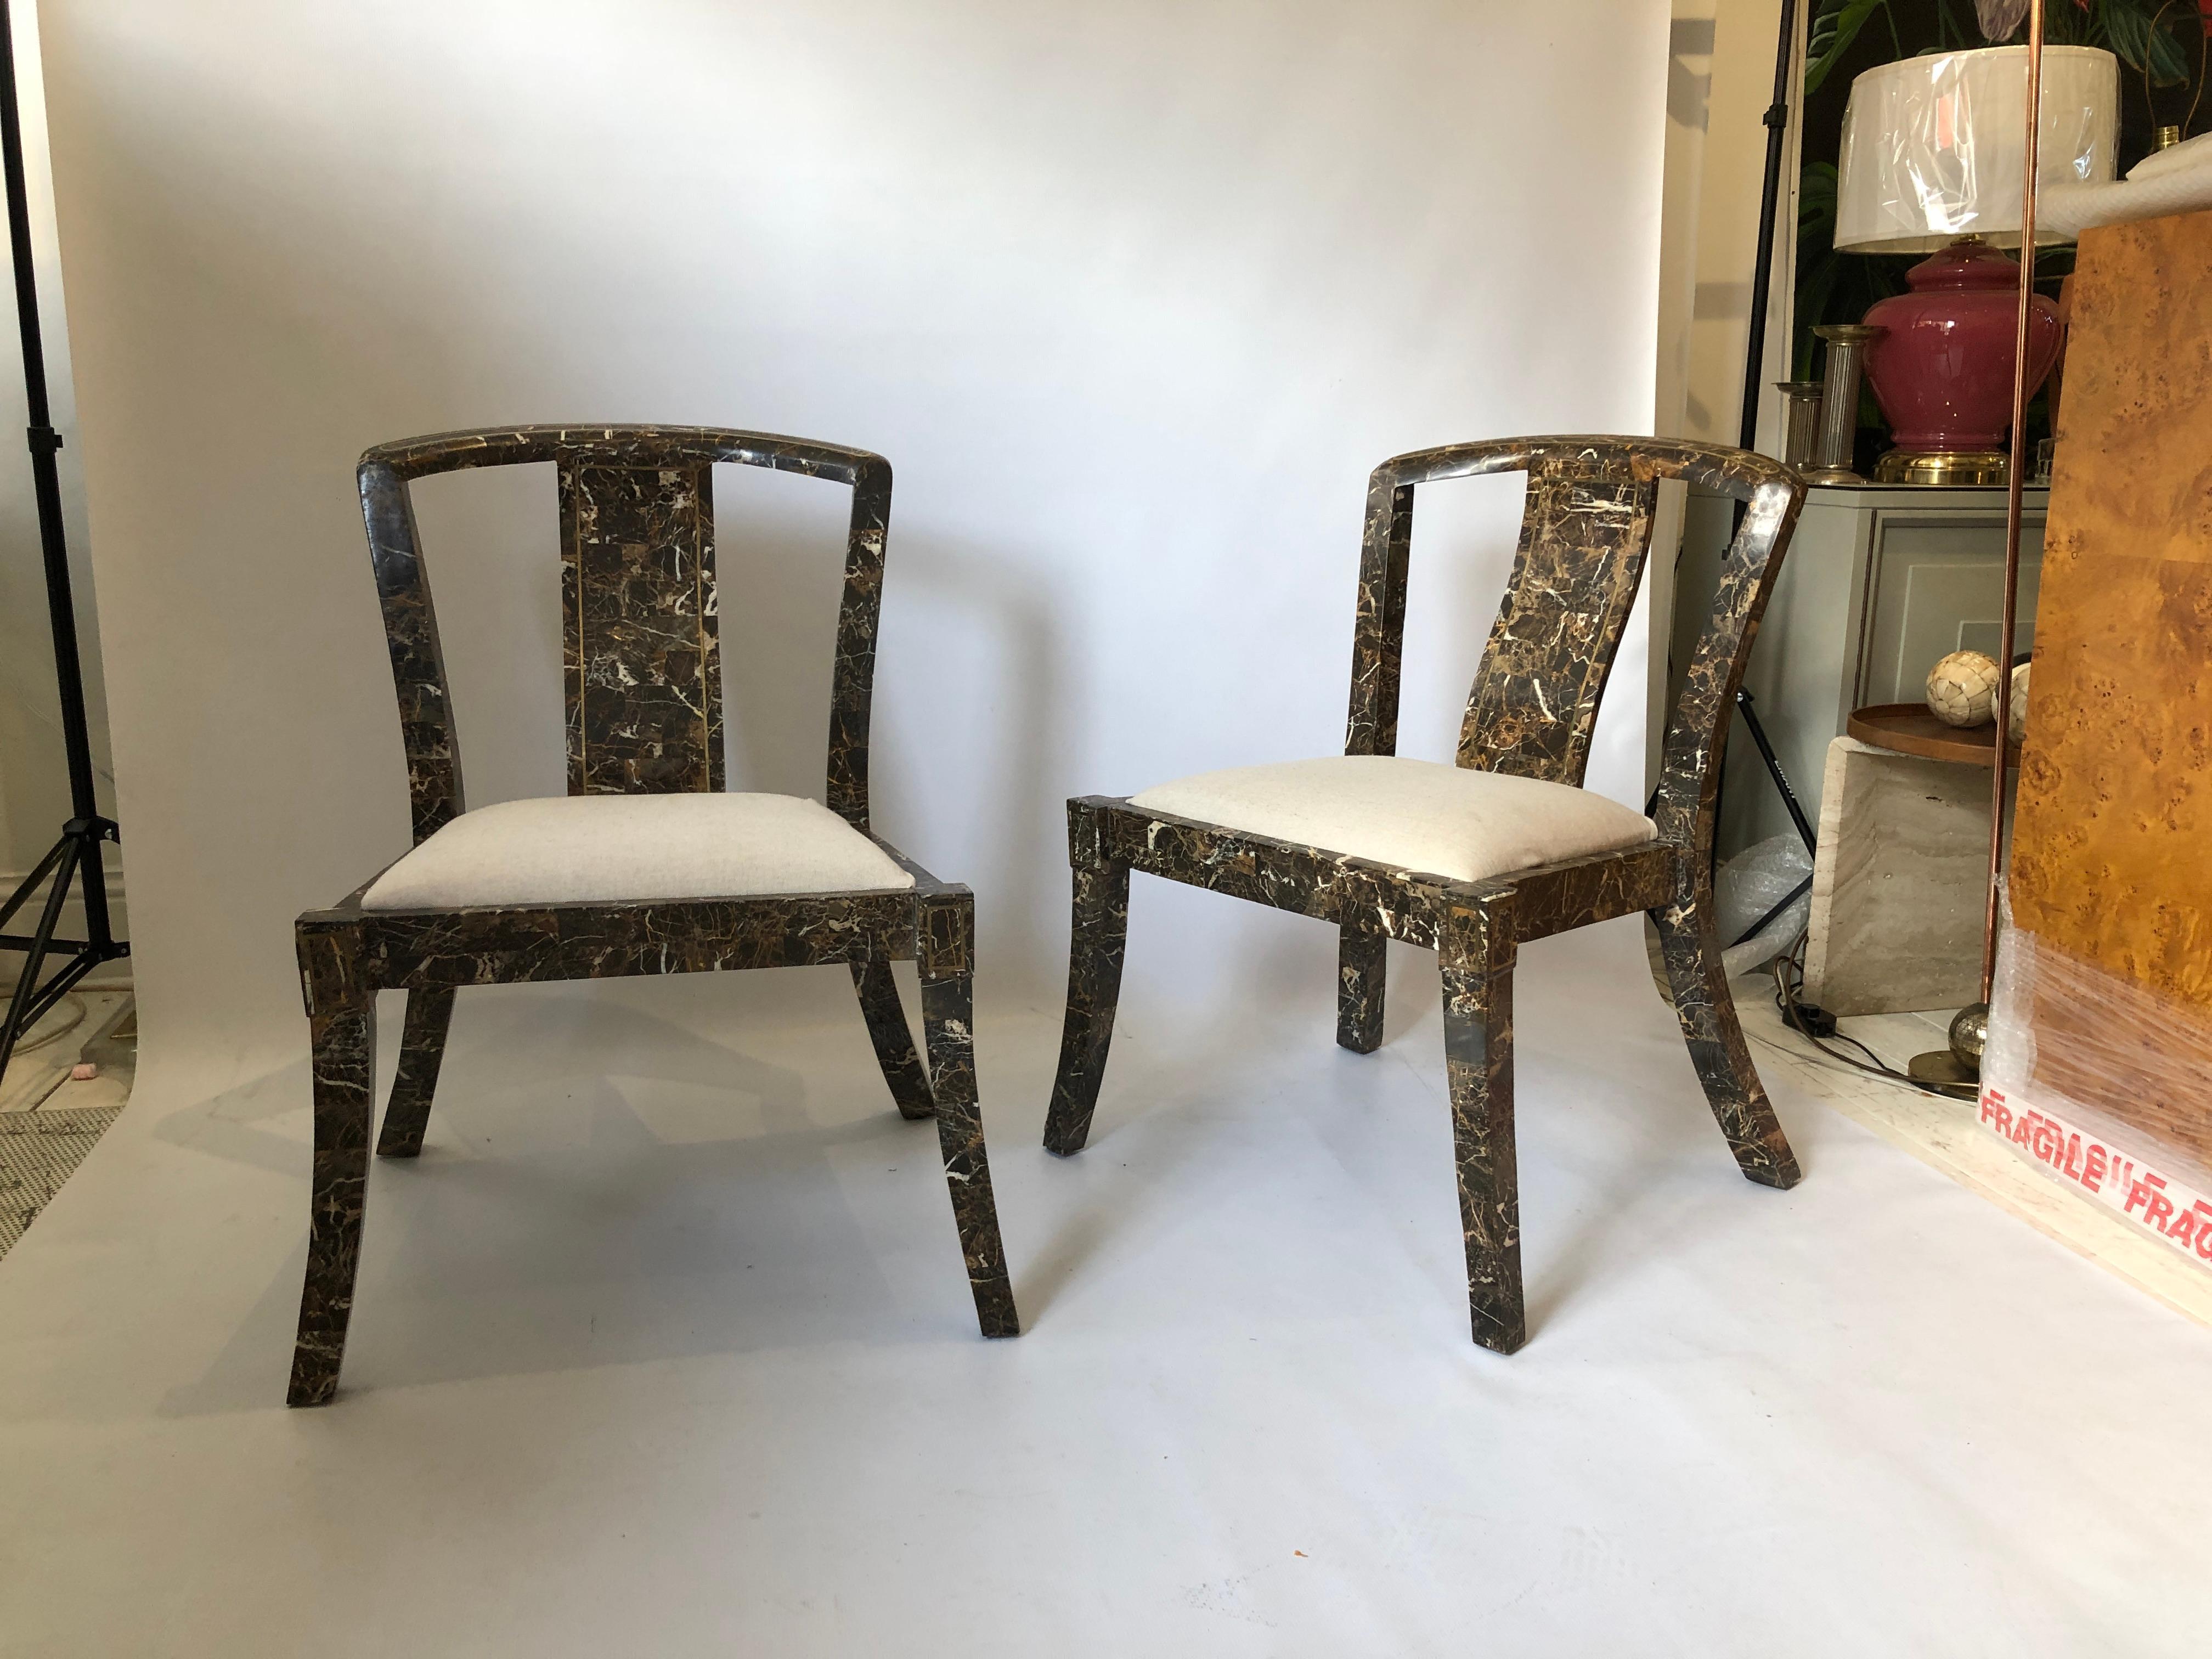 Magnifique paire de chaises d'appoint en marbre des années 1970 de Maitland-Smith, la célèbre société américaine de meubles. Cadre en marbre d'inspiration chinoise avec incrustation de laiton et coins légèrement incurvés, le tout fini dans de